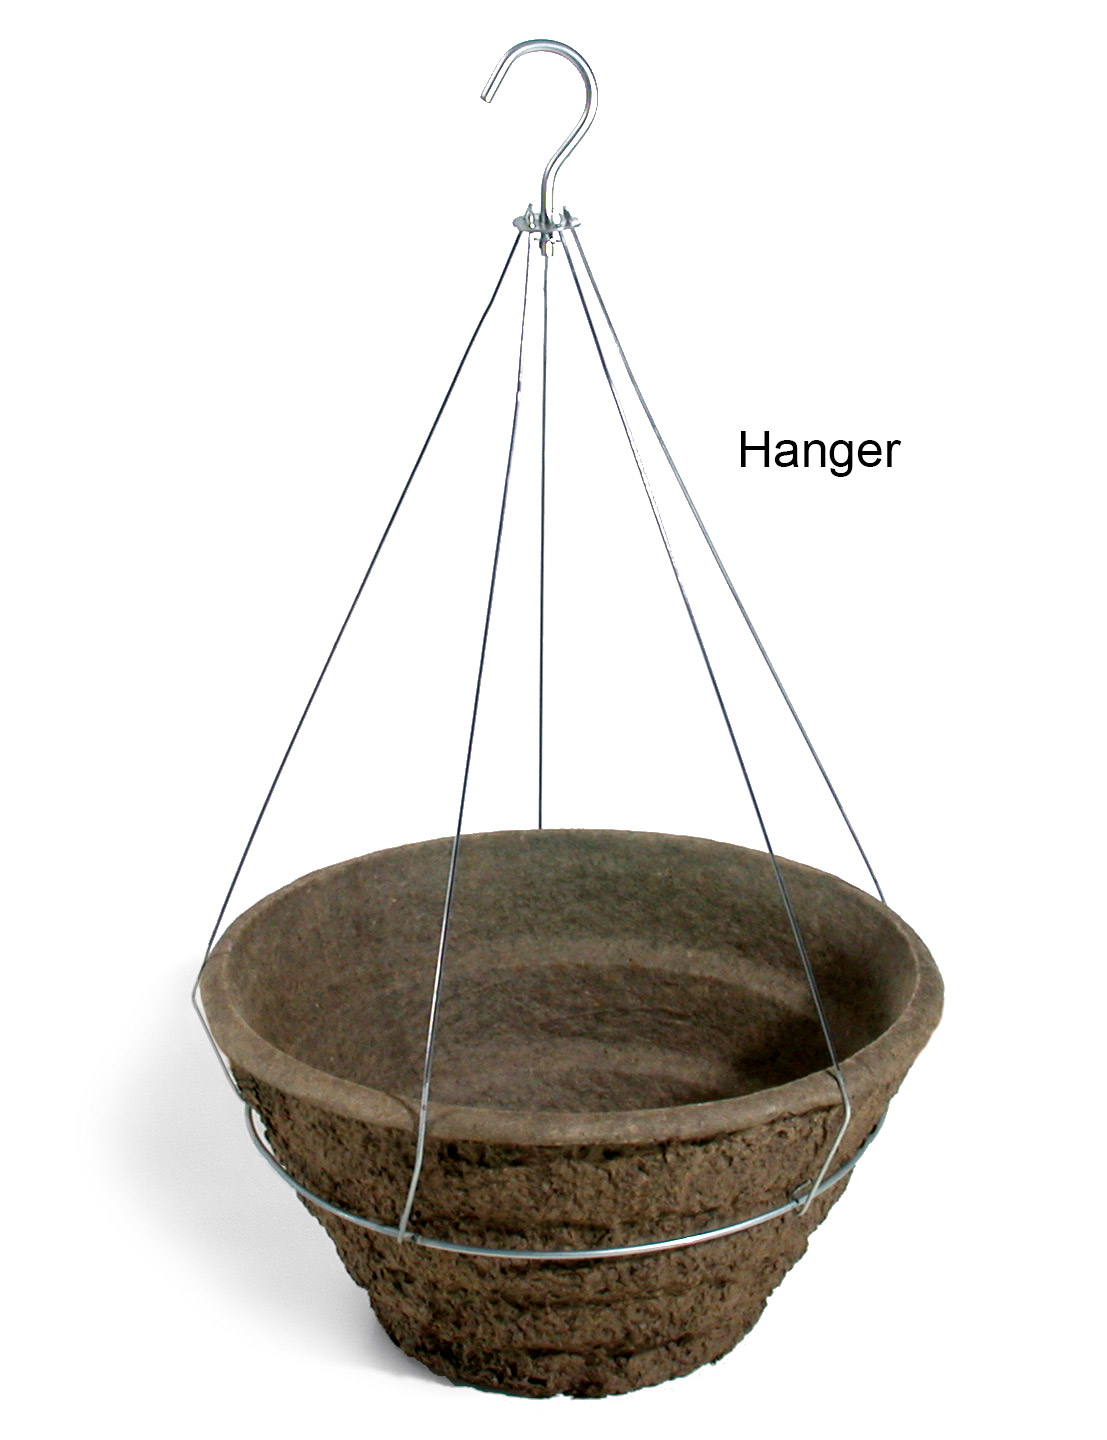 16 Inch Garden Basket Hanger - 20 per case - Hangers